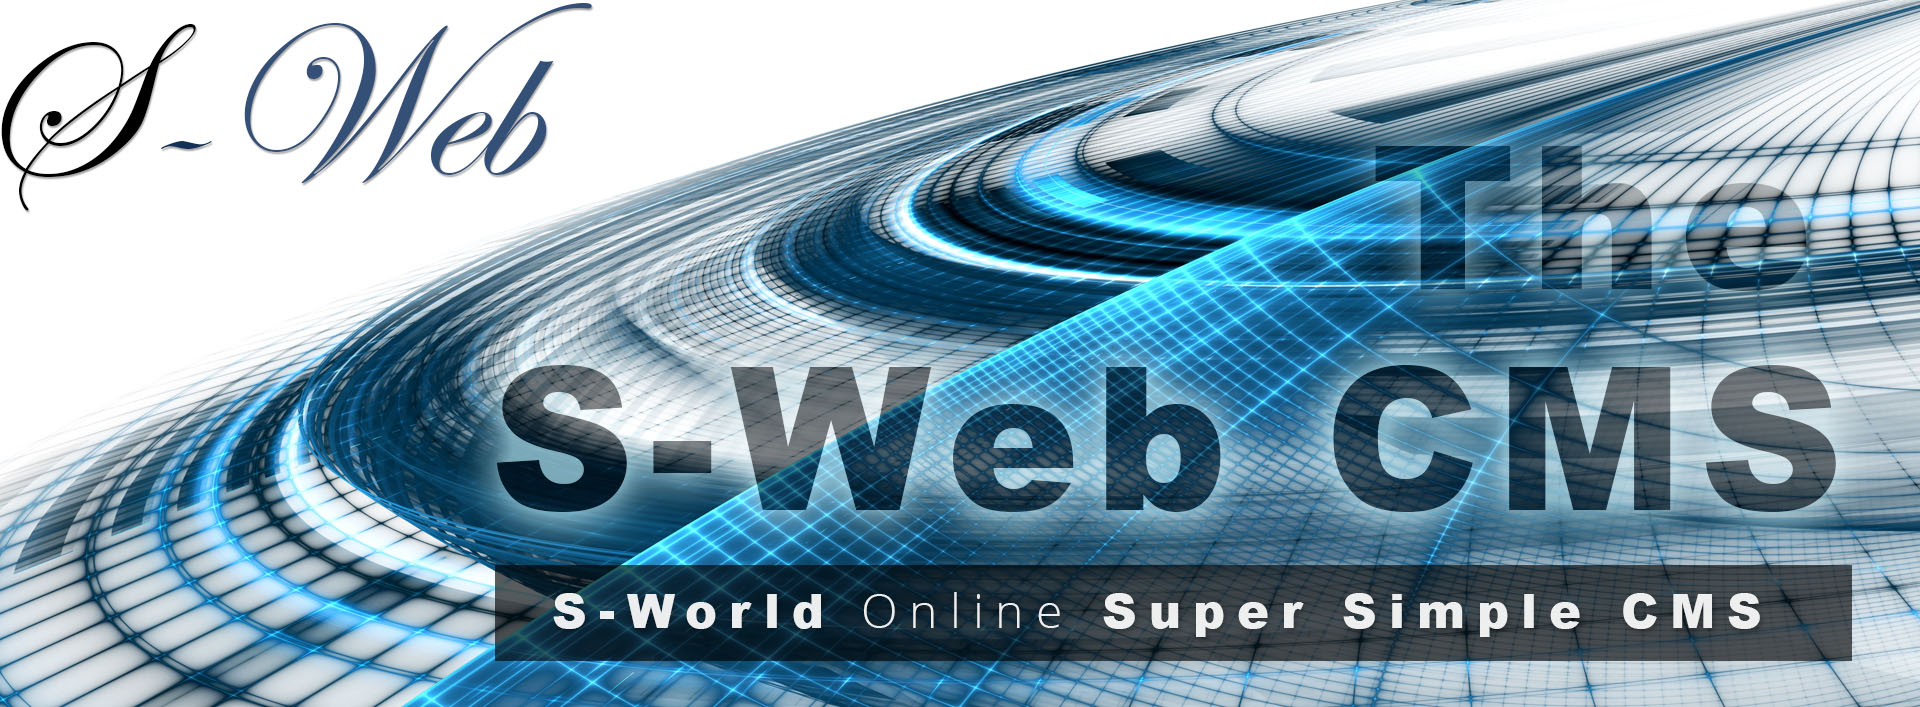 S-Web™CMS__S-World-Online--Super-Simple-CMS